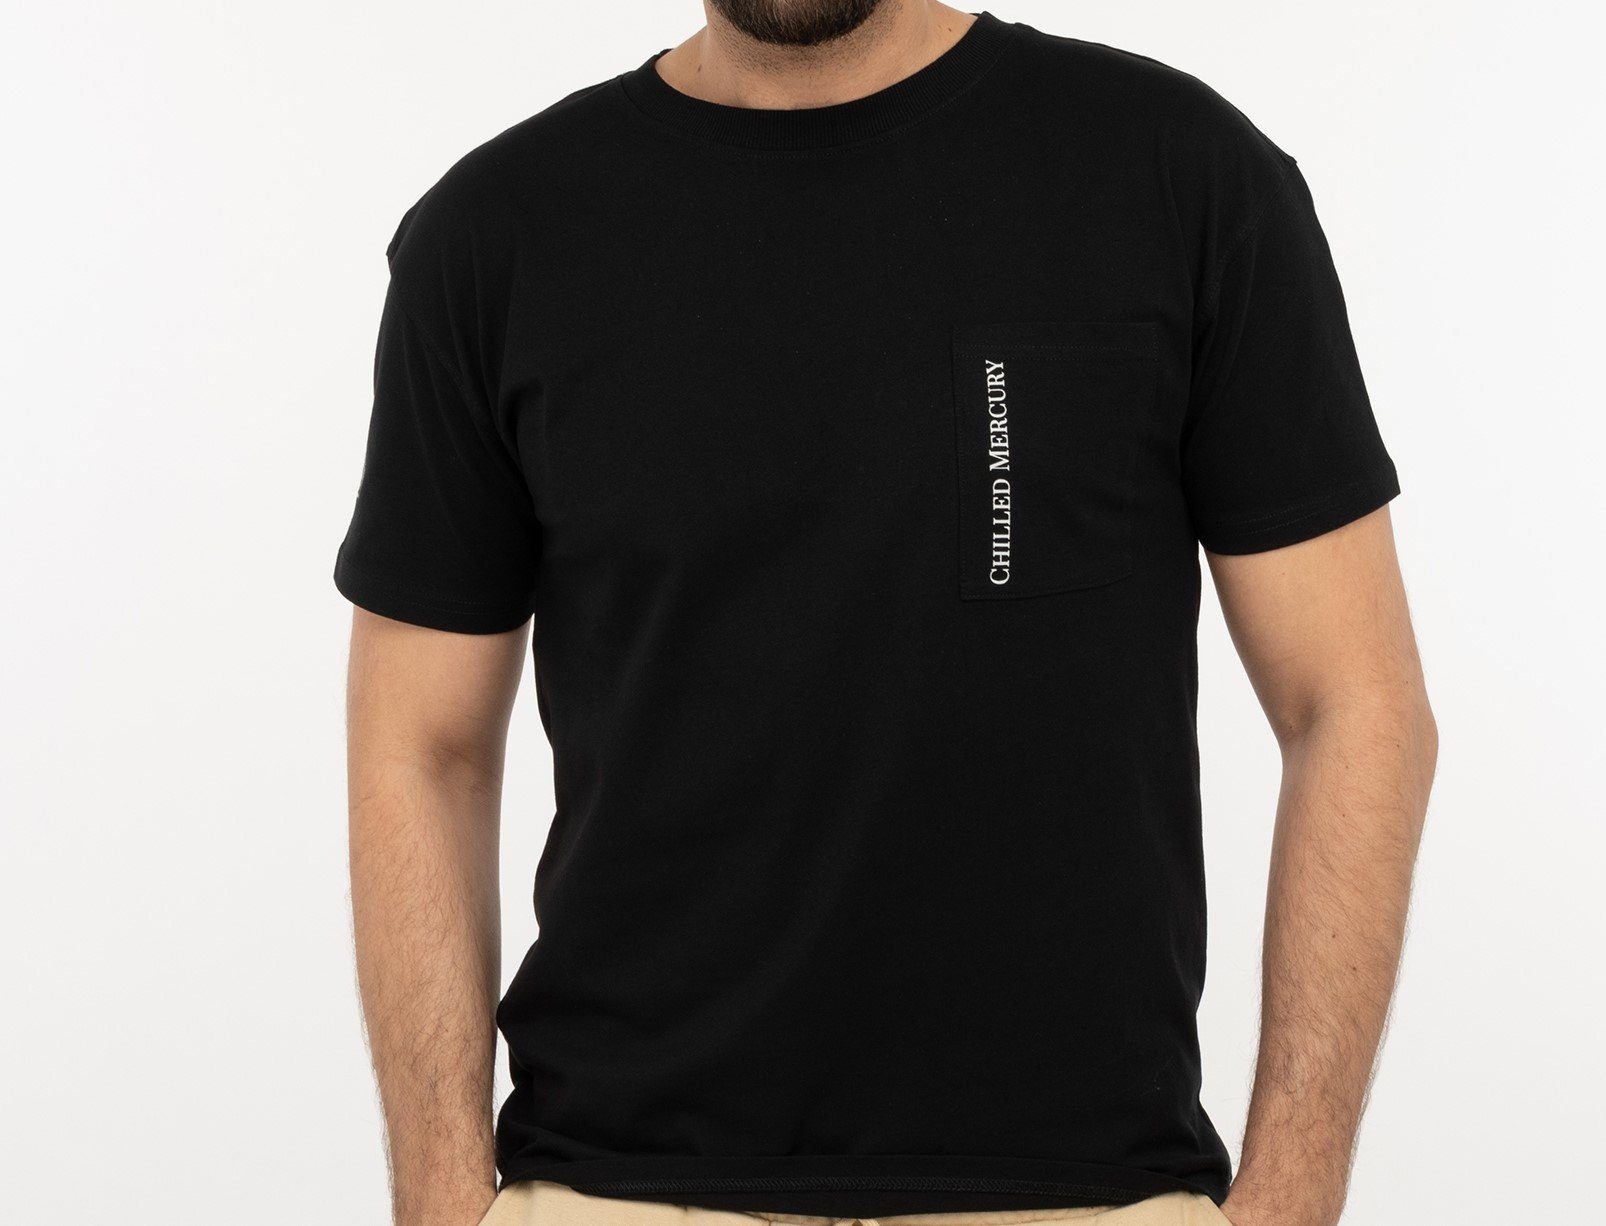 Chilled Mercury T-Shirt Baumwolle Freizeit Rundhals Shirt/ mit Brusttasche Schwarz